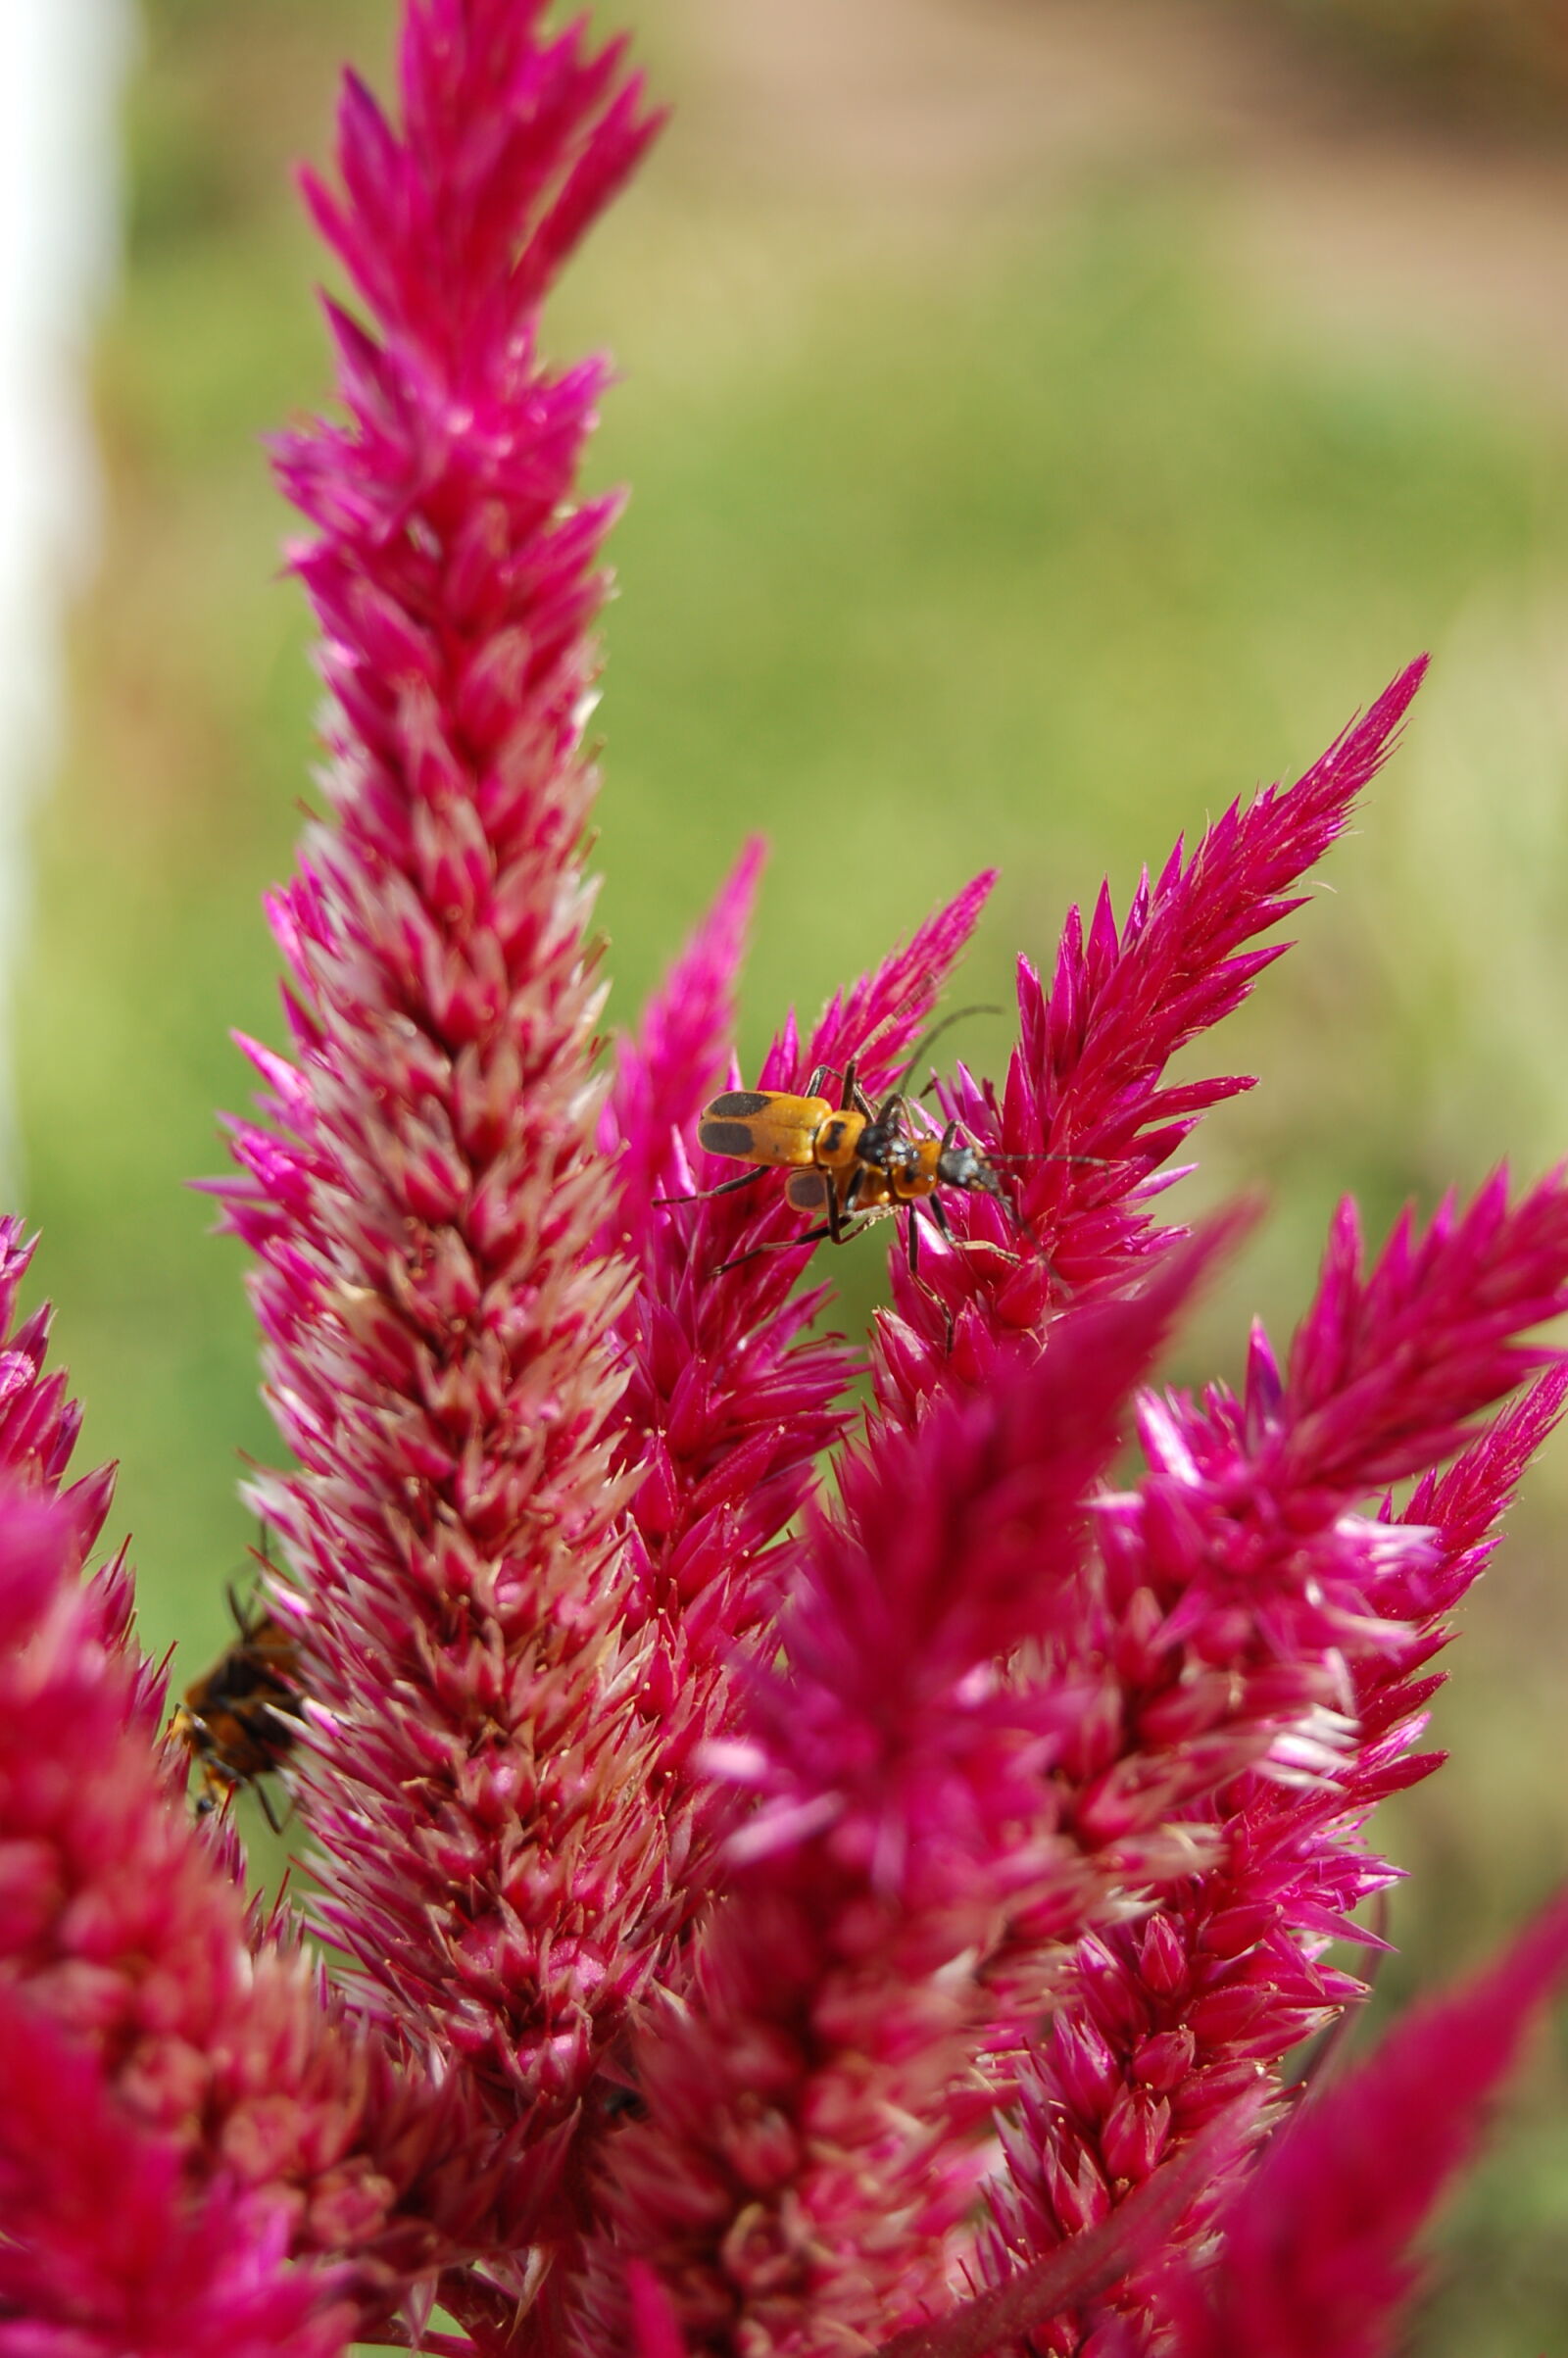 AF-S DX Zoom-Nikkor 18-55mm f/3.5-5.6G ED sample photo. Bees, pink, flower photography